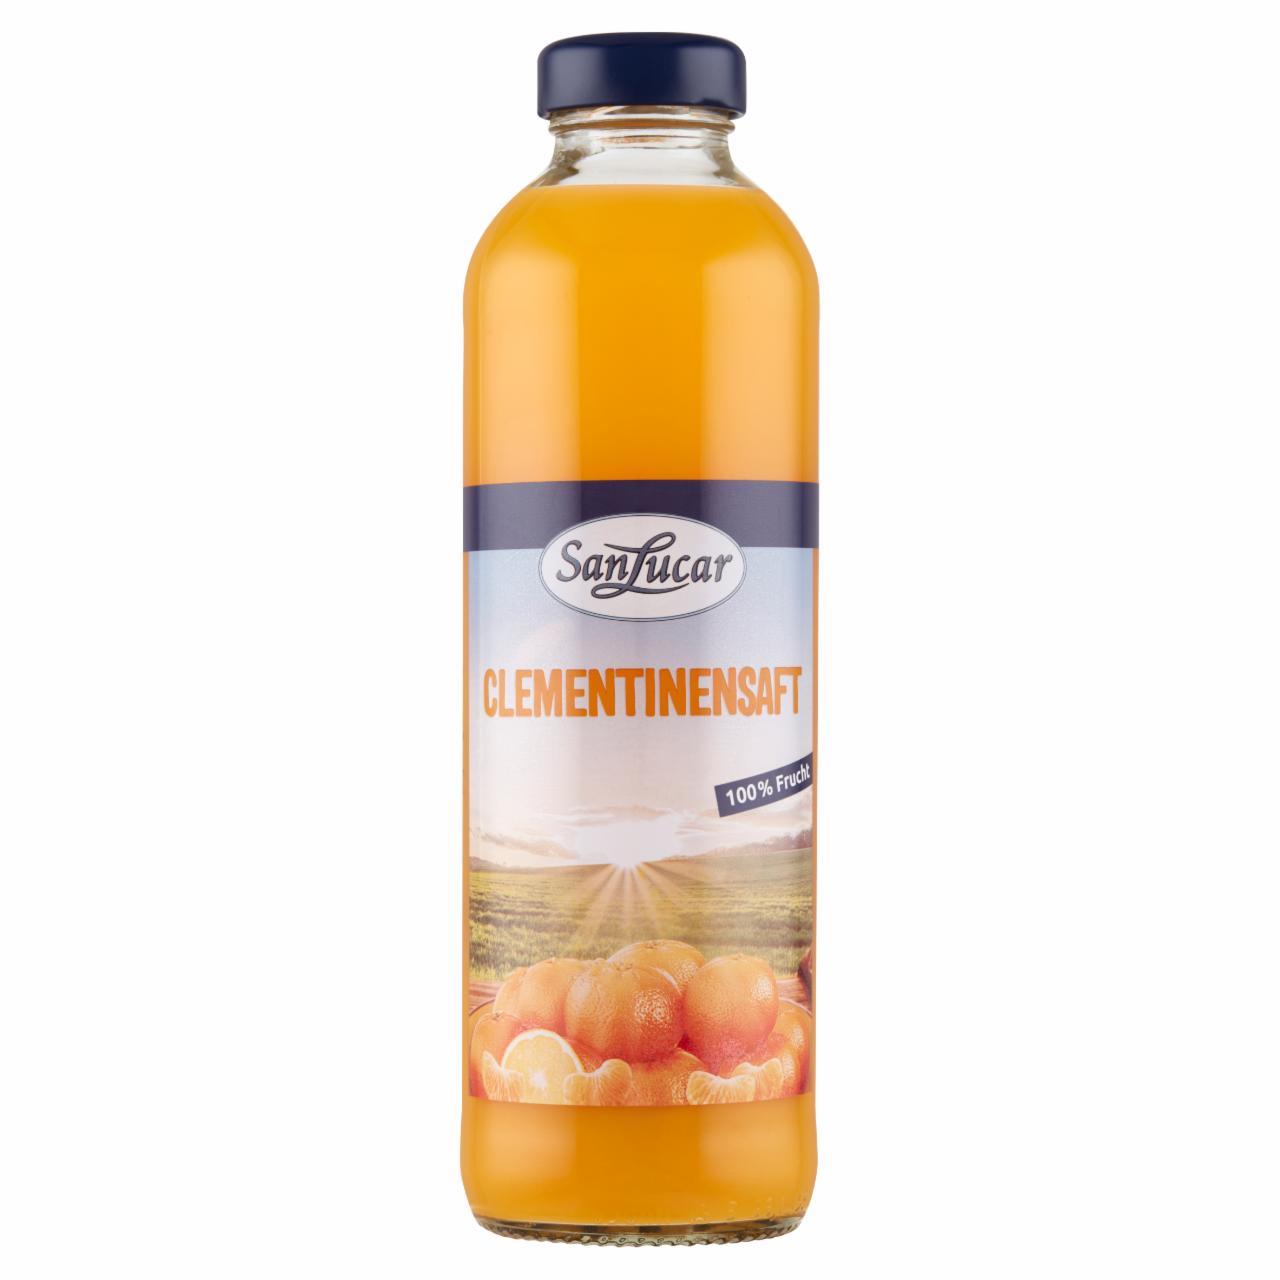 Képek - San Lucar clementine juice 100% gyümölcsből 650 ml